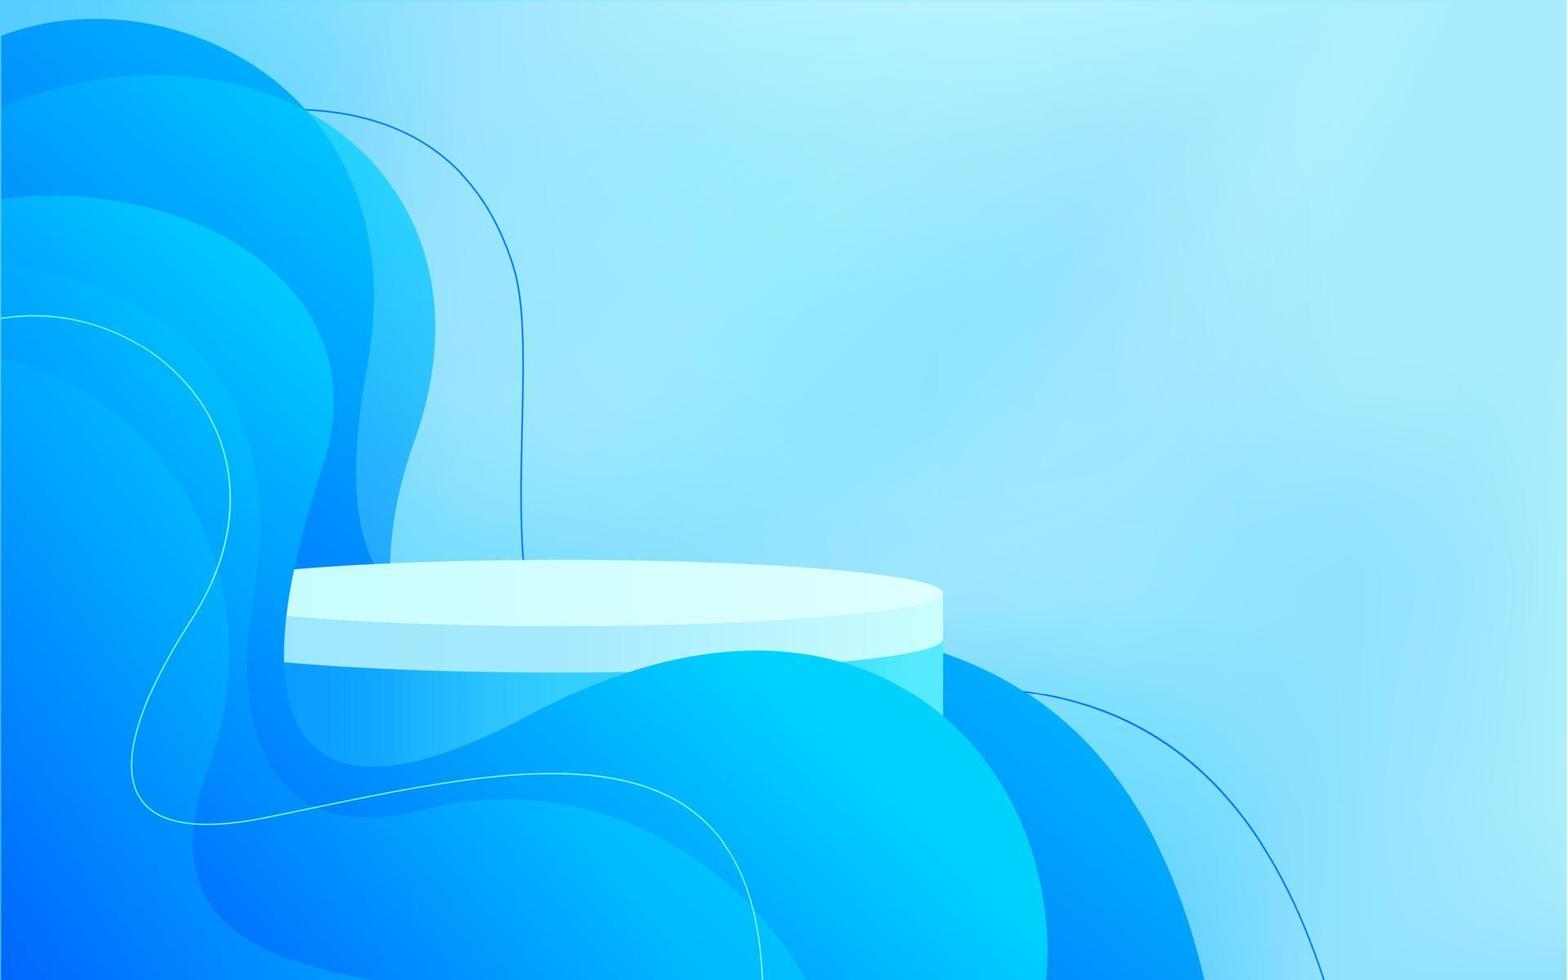 abstract 3d cilinder staan podium met blauw lijn Golf decoratie. blauw muur tafereel achtergrond voor Product Scherm presentatie, model, vitrine. vector renderen platform